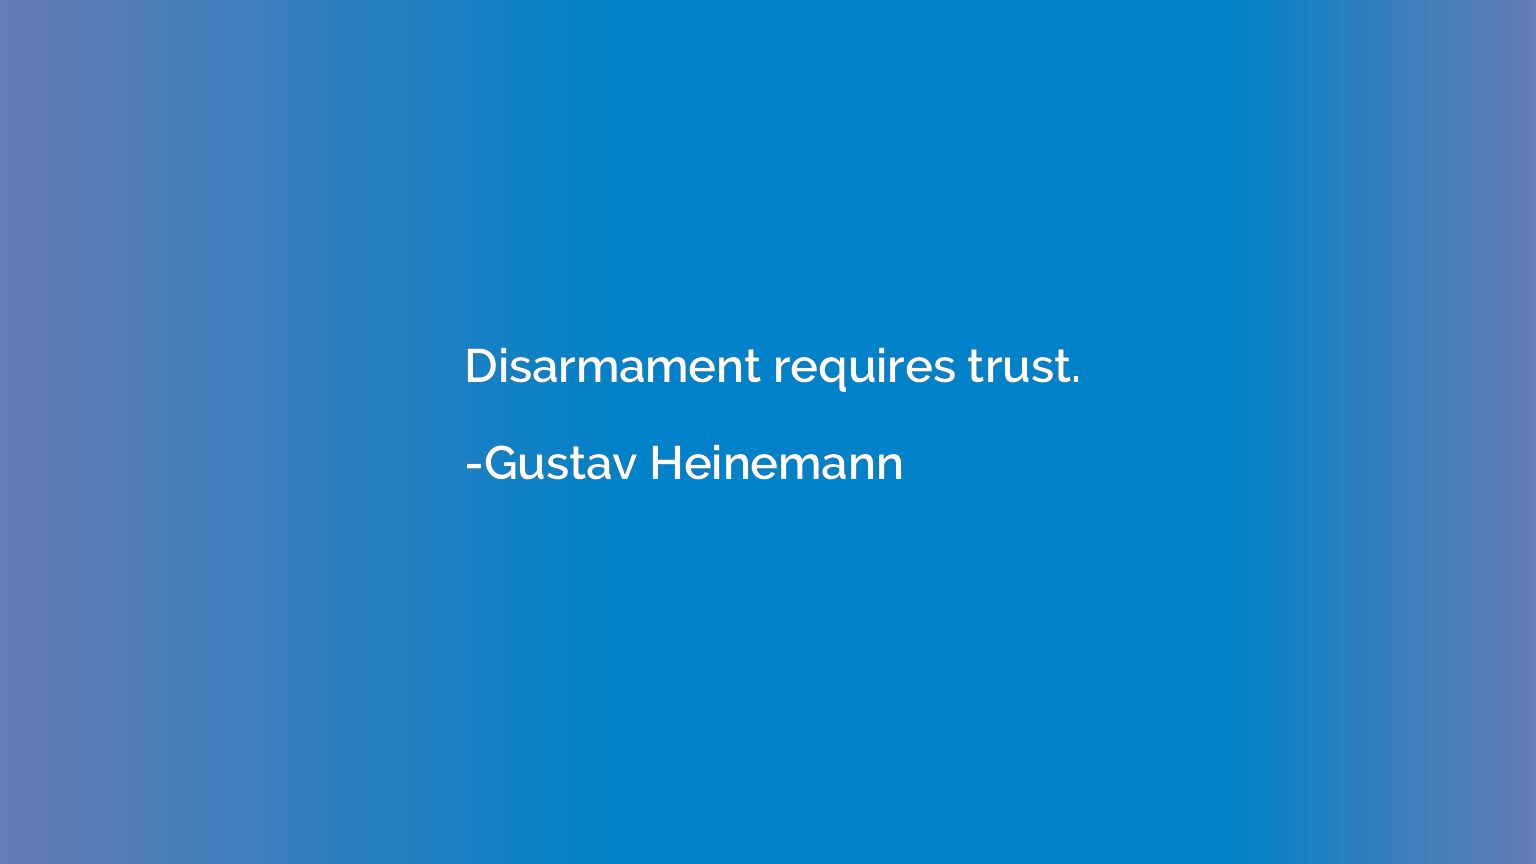 Disarmament requires trust.